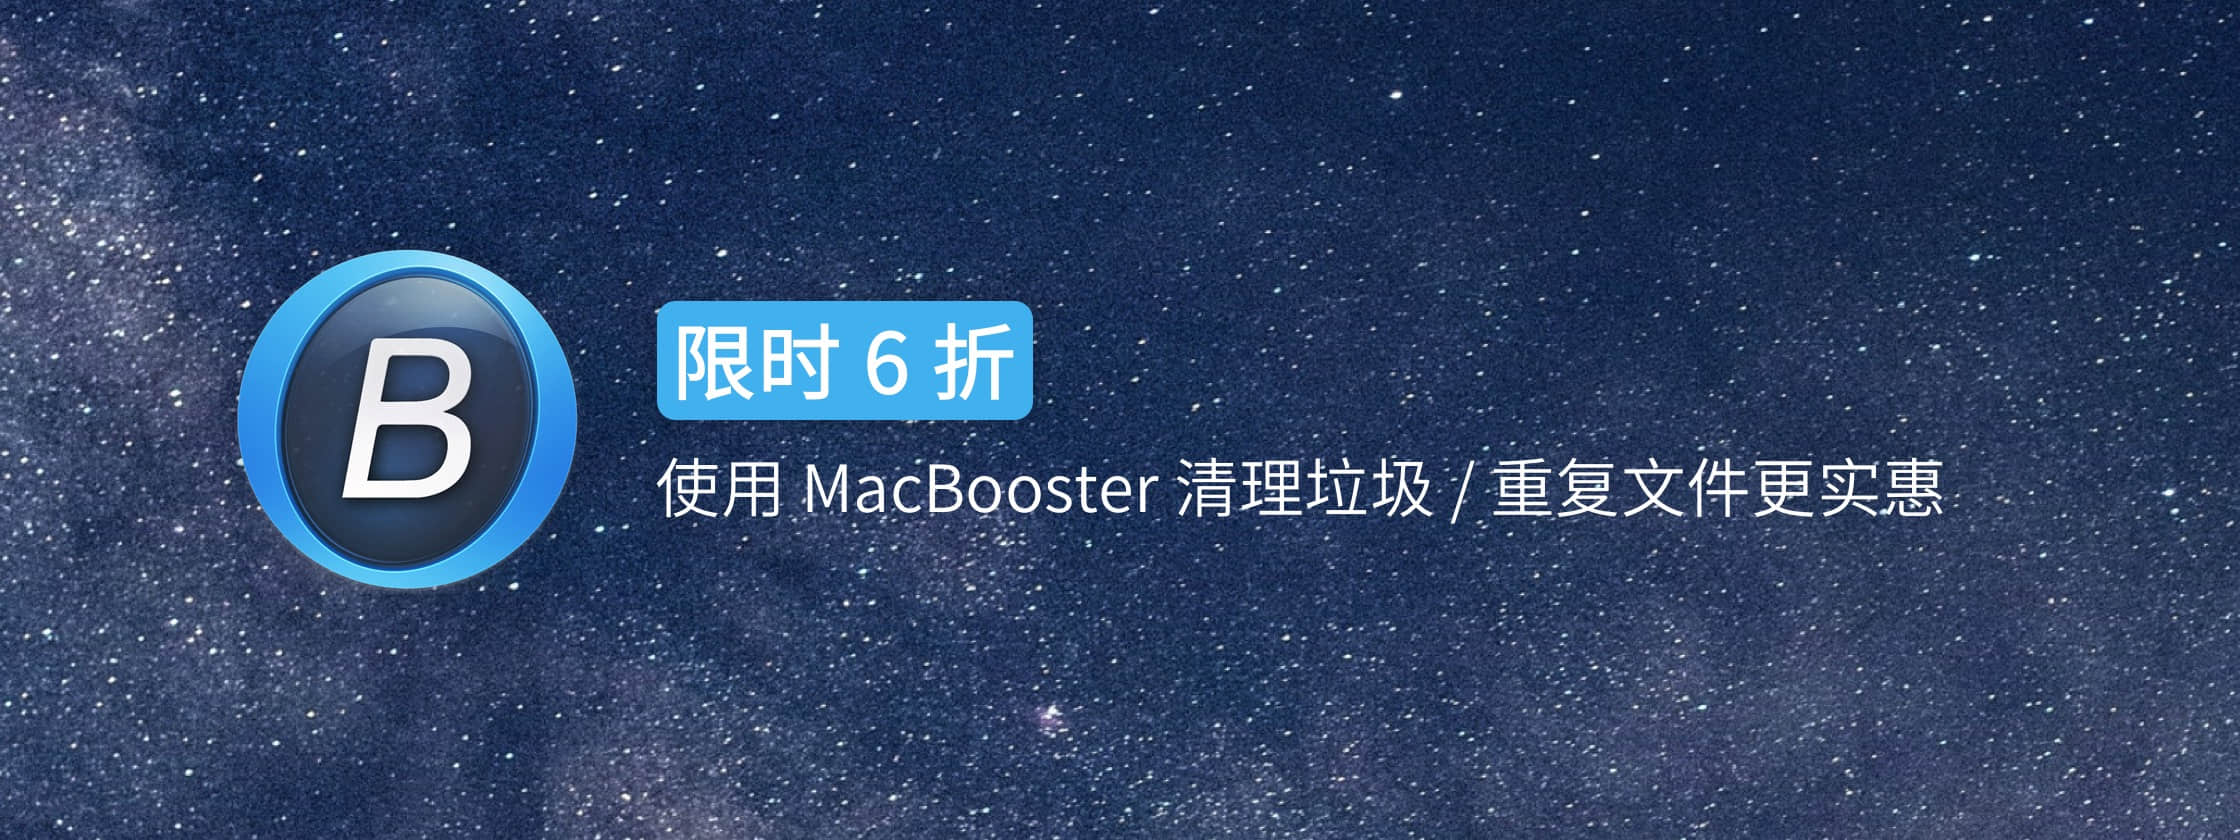 限时 6 折 | 功能不输 CleanMyMac，使用 MacBooster 清理垃圾 / 重复文件更实惠